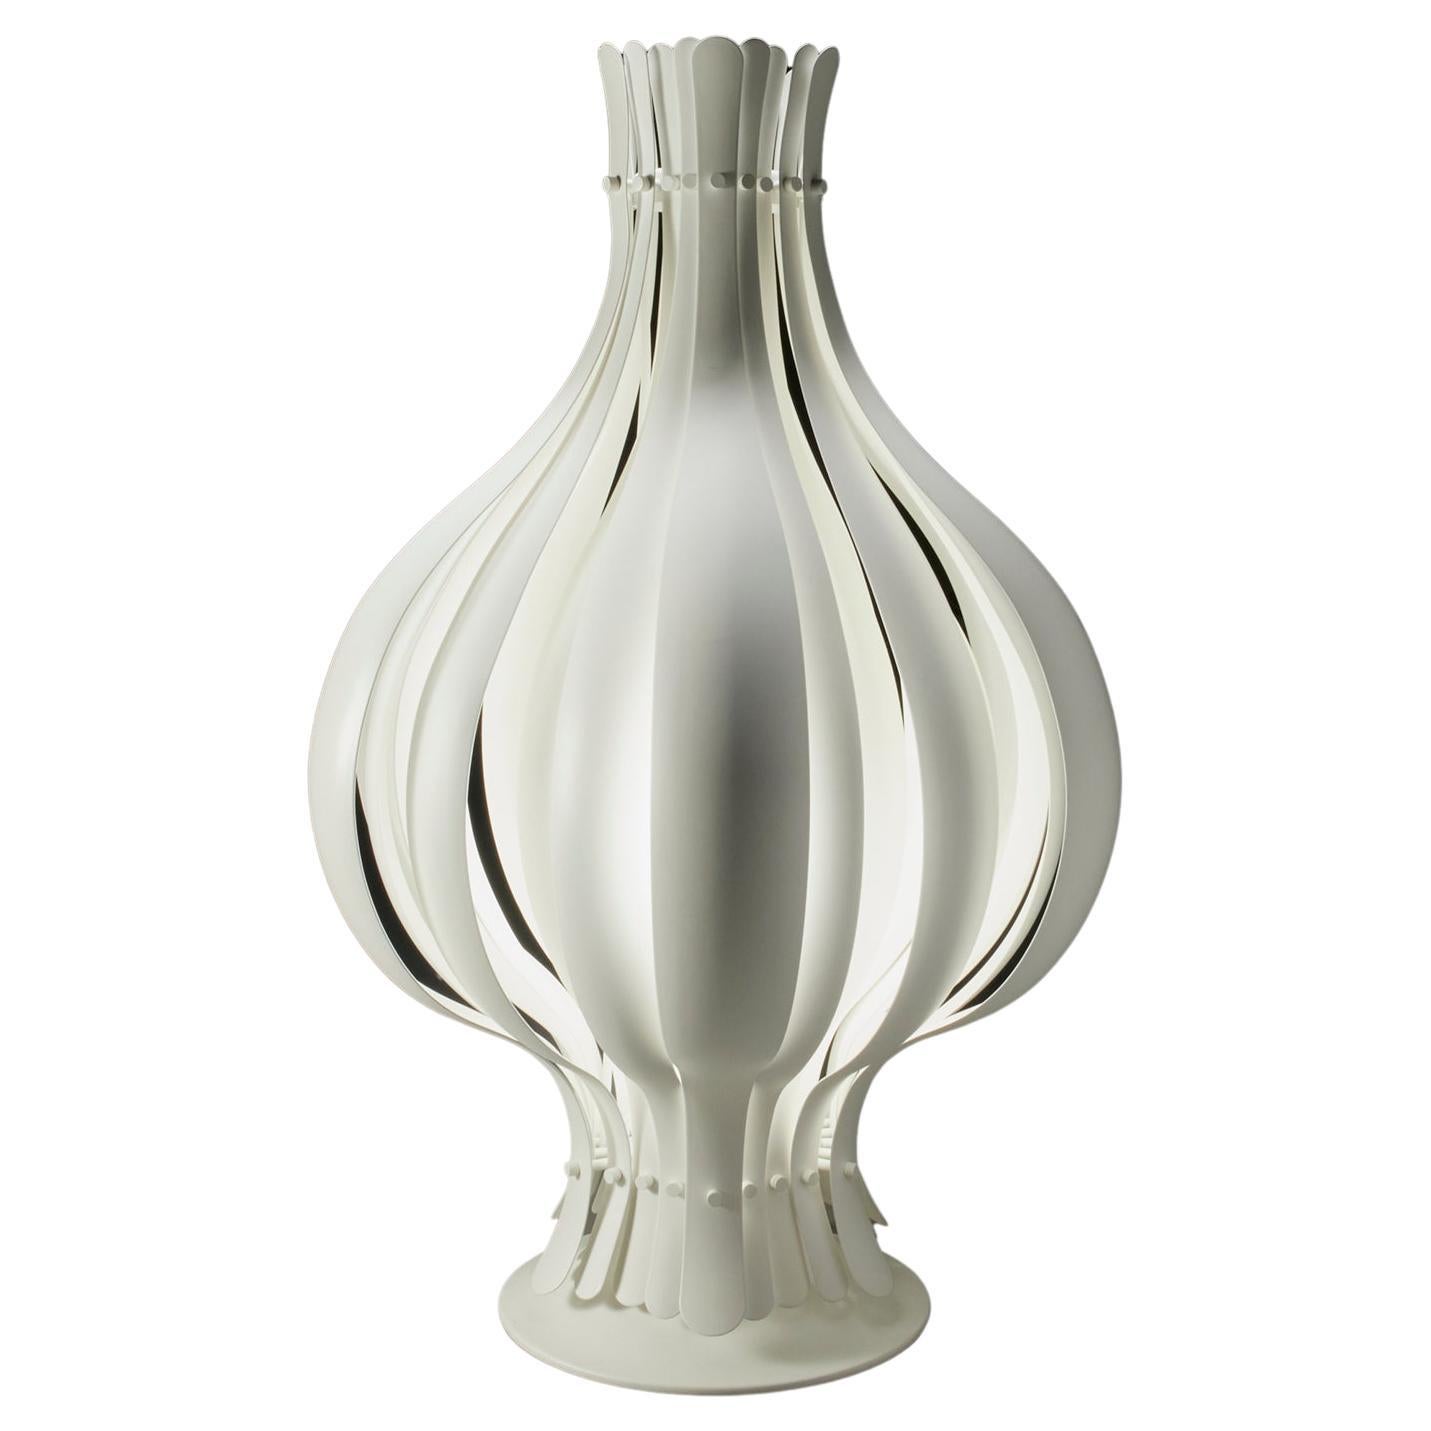 Verner Panton White Enameled Onion Table Lamp, Danish Modern For Sale